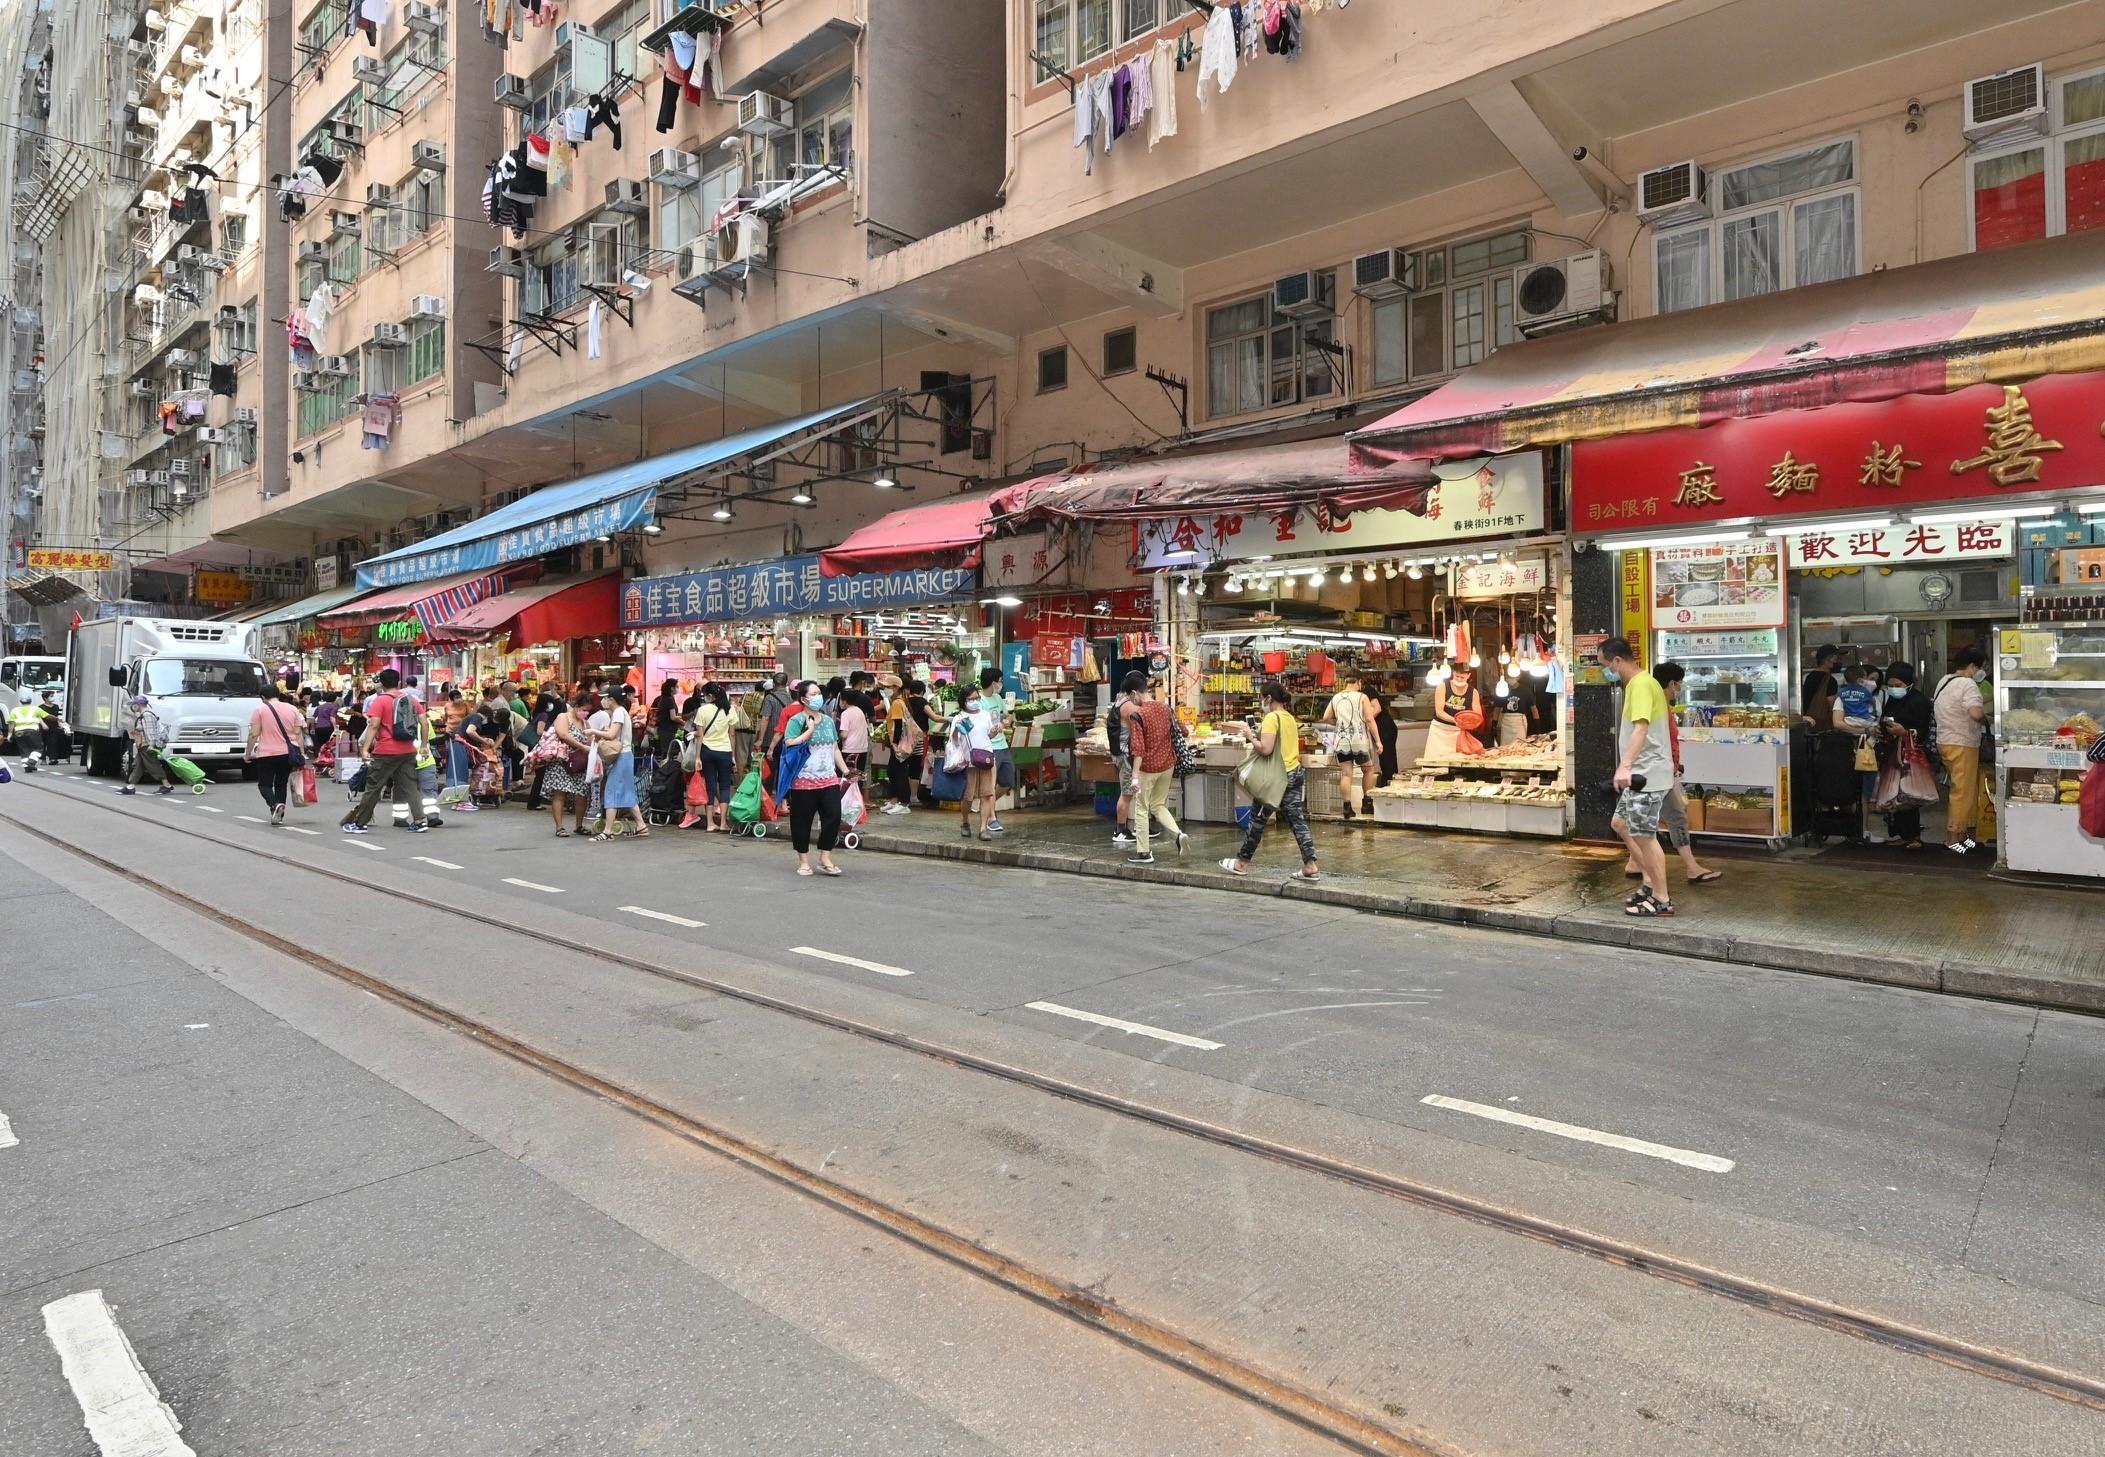 食物环境卫生署与香港警务处自十月三日起先后于各区展开连串严厉执法行动打击非法店铺阻街活动。图示东区一条街道于昨日（十月八日）联合行动后的情况。 